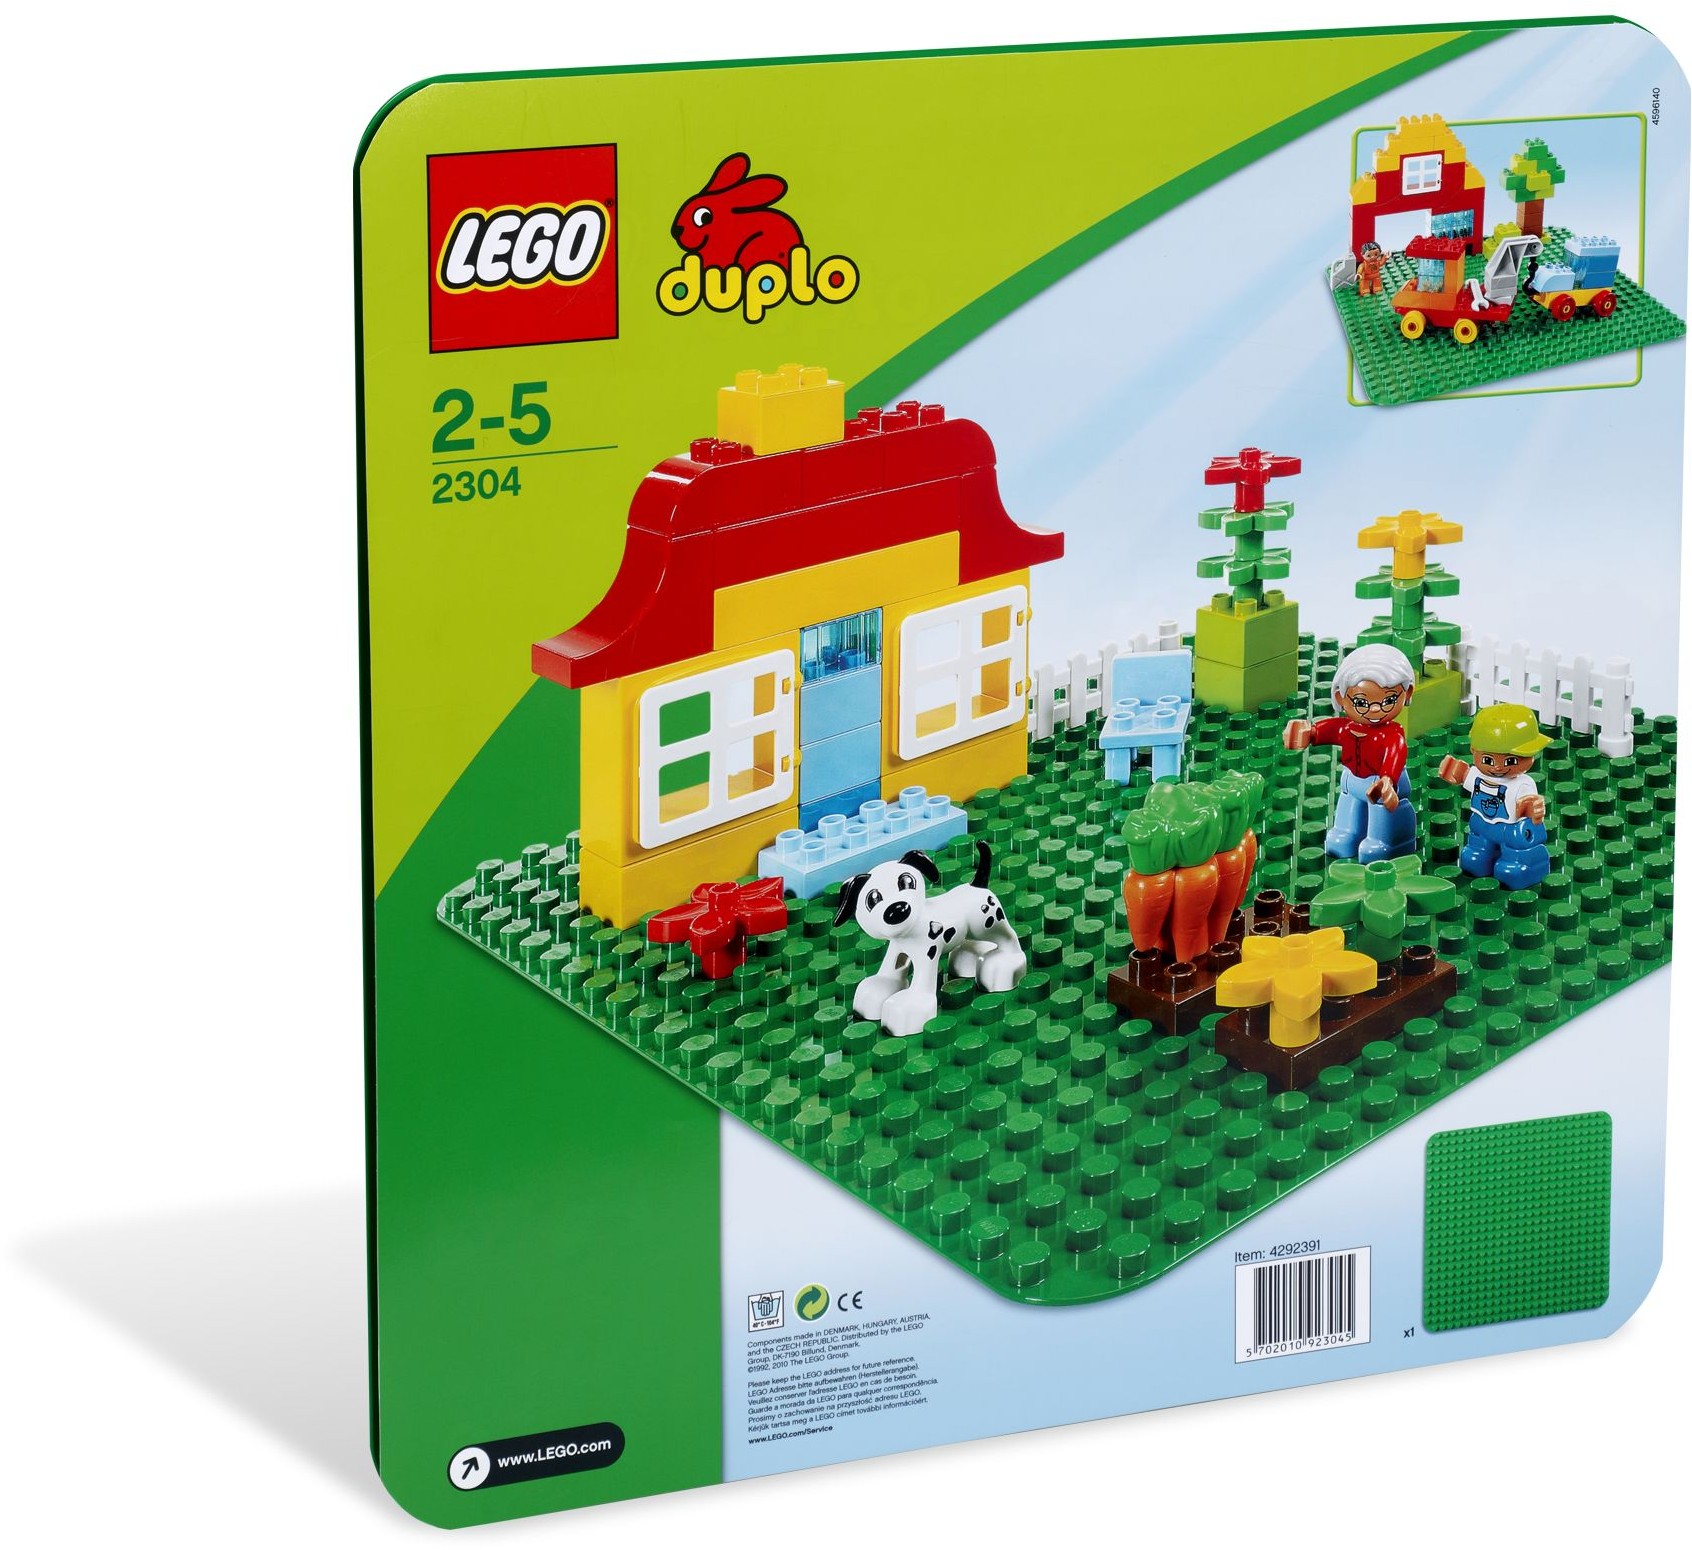 LEGO DUPLO - Stor, grønn byggeplate (2304)